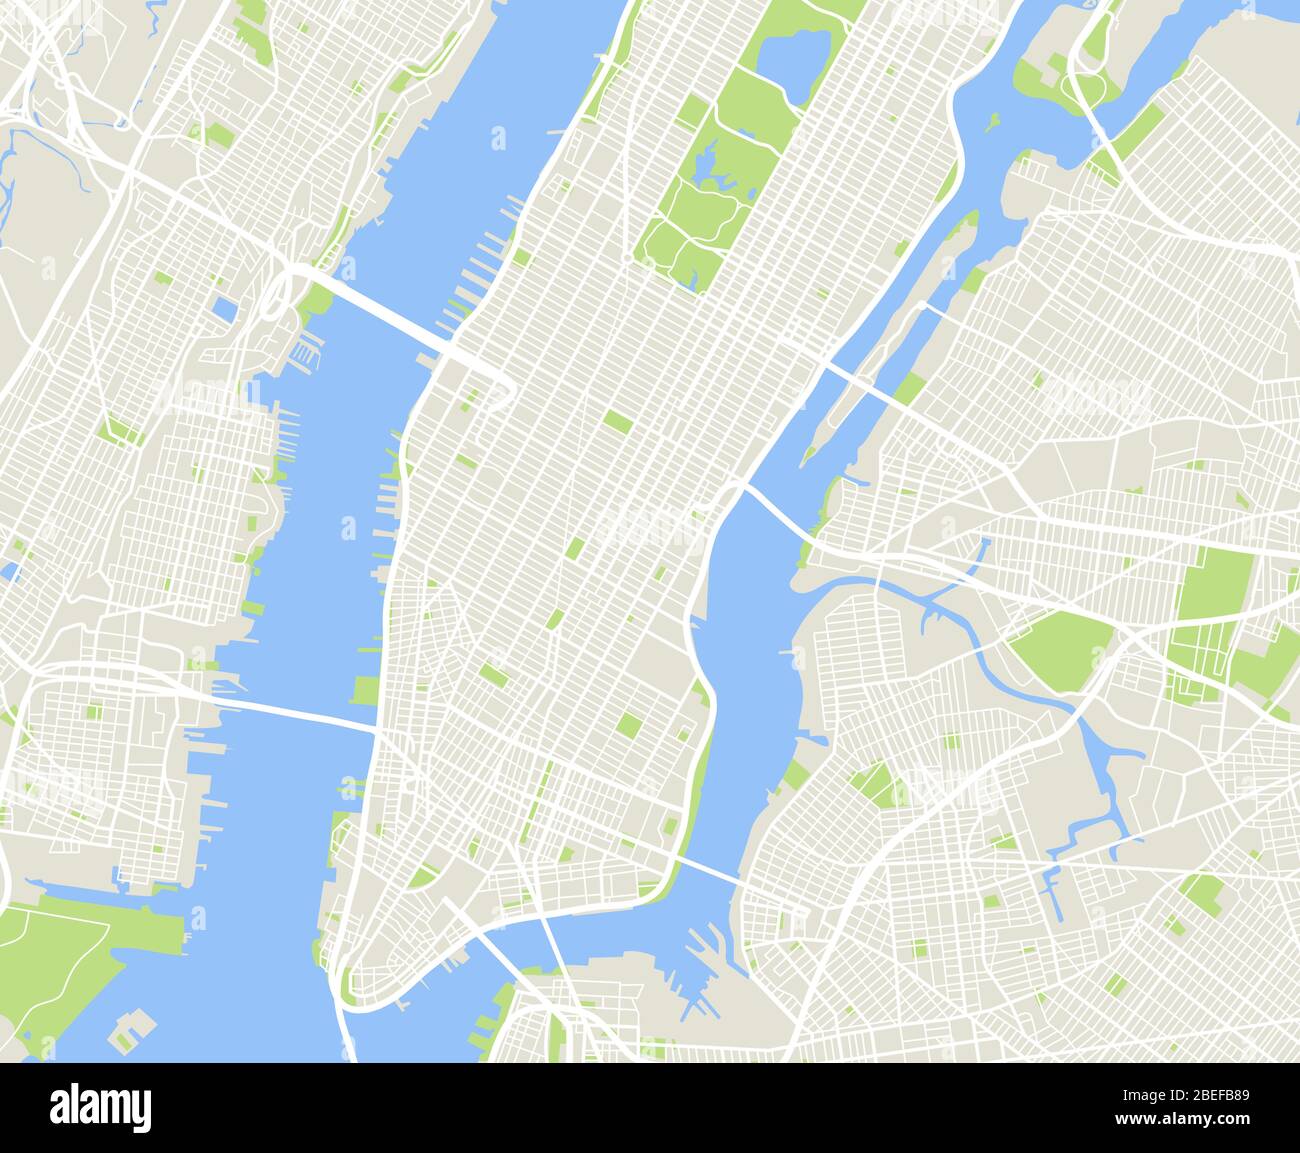 Mappa vettoriale della città urbana di New York e Manhattan. Mappa urbana di New york, illustrazione cartografica di nyc e manhattan Illustrazione Vettoriale